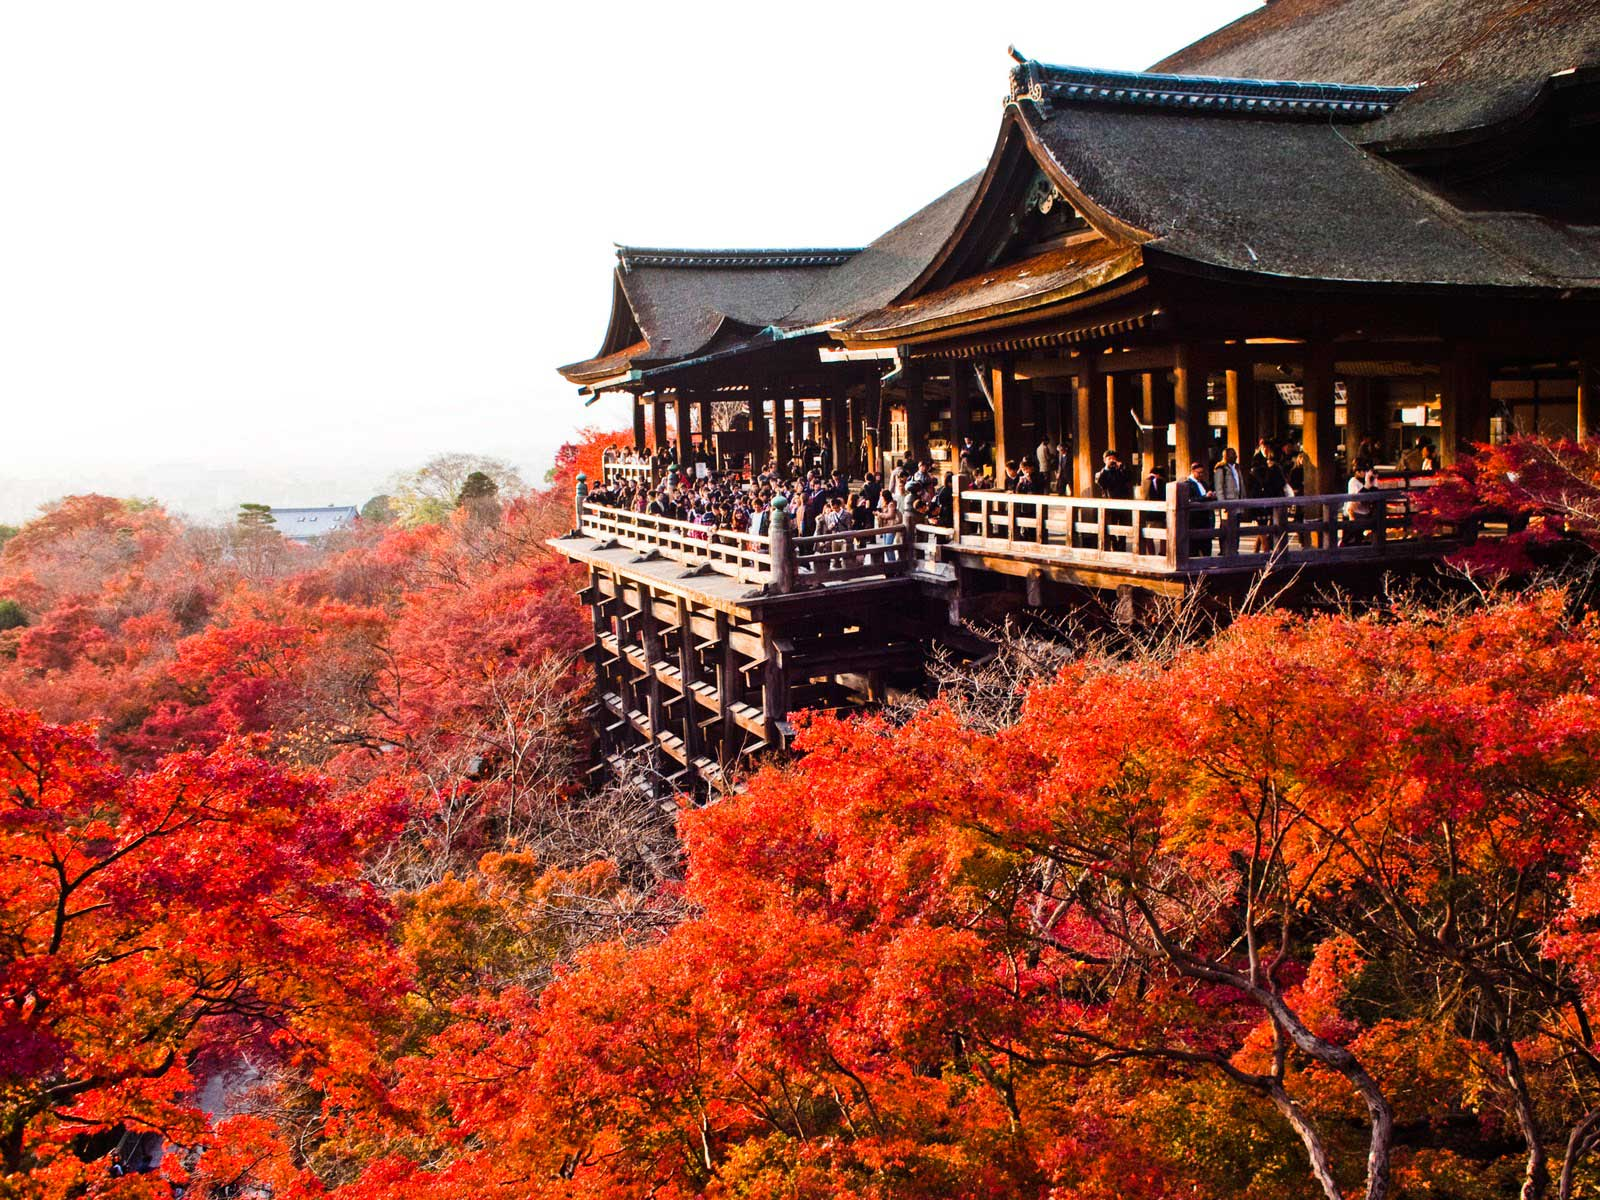 Caption + Alt: Khung cảnh tuyệt đẹp khi mùa thu sang ở iyomizudera - Kyoto (Nguồn:thegioitre.vn)